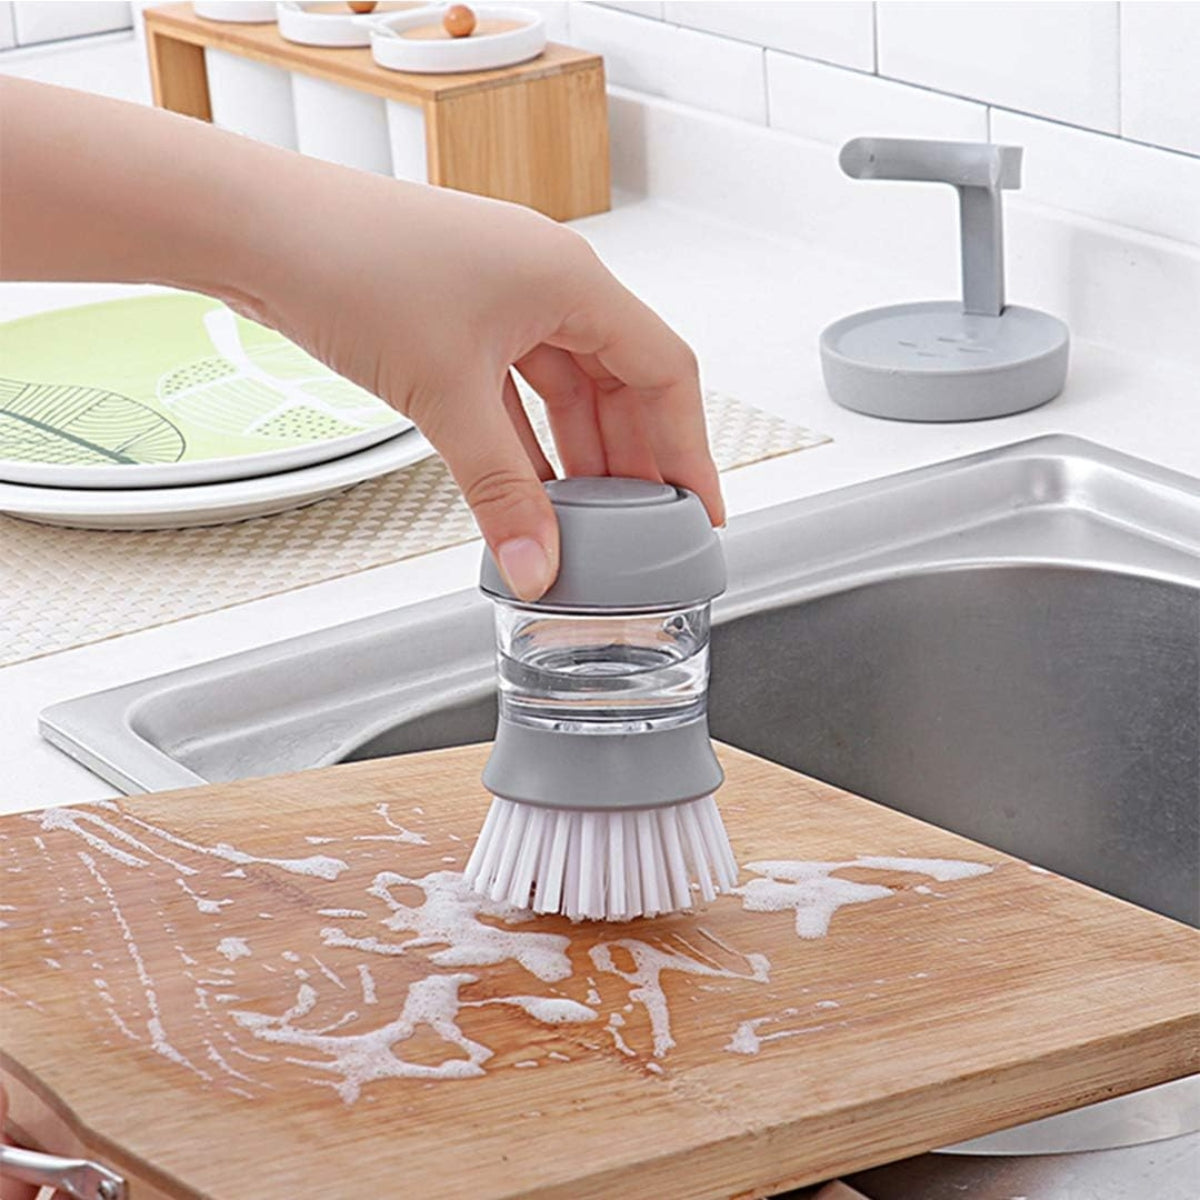 Sérénosols™DispensBrush | Nettoyage efficace et gain de temps avec dosage contrôlé du savon (1 1 GRATUIT)